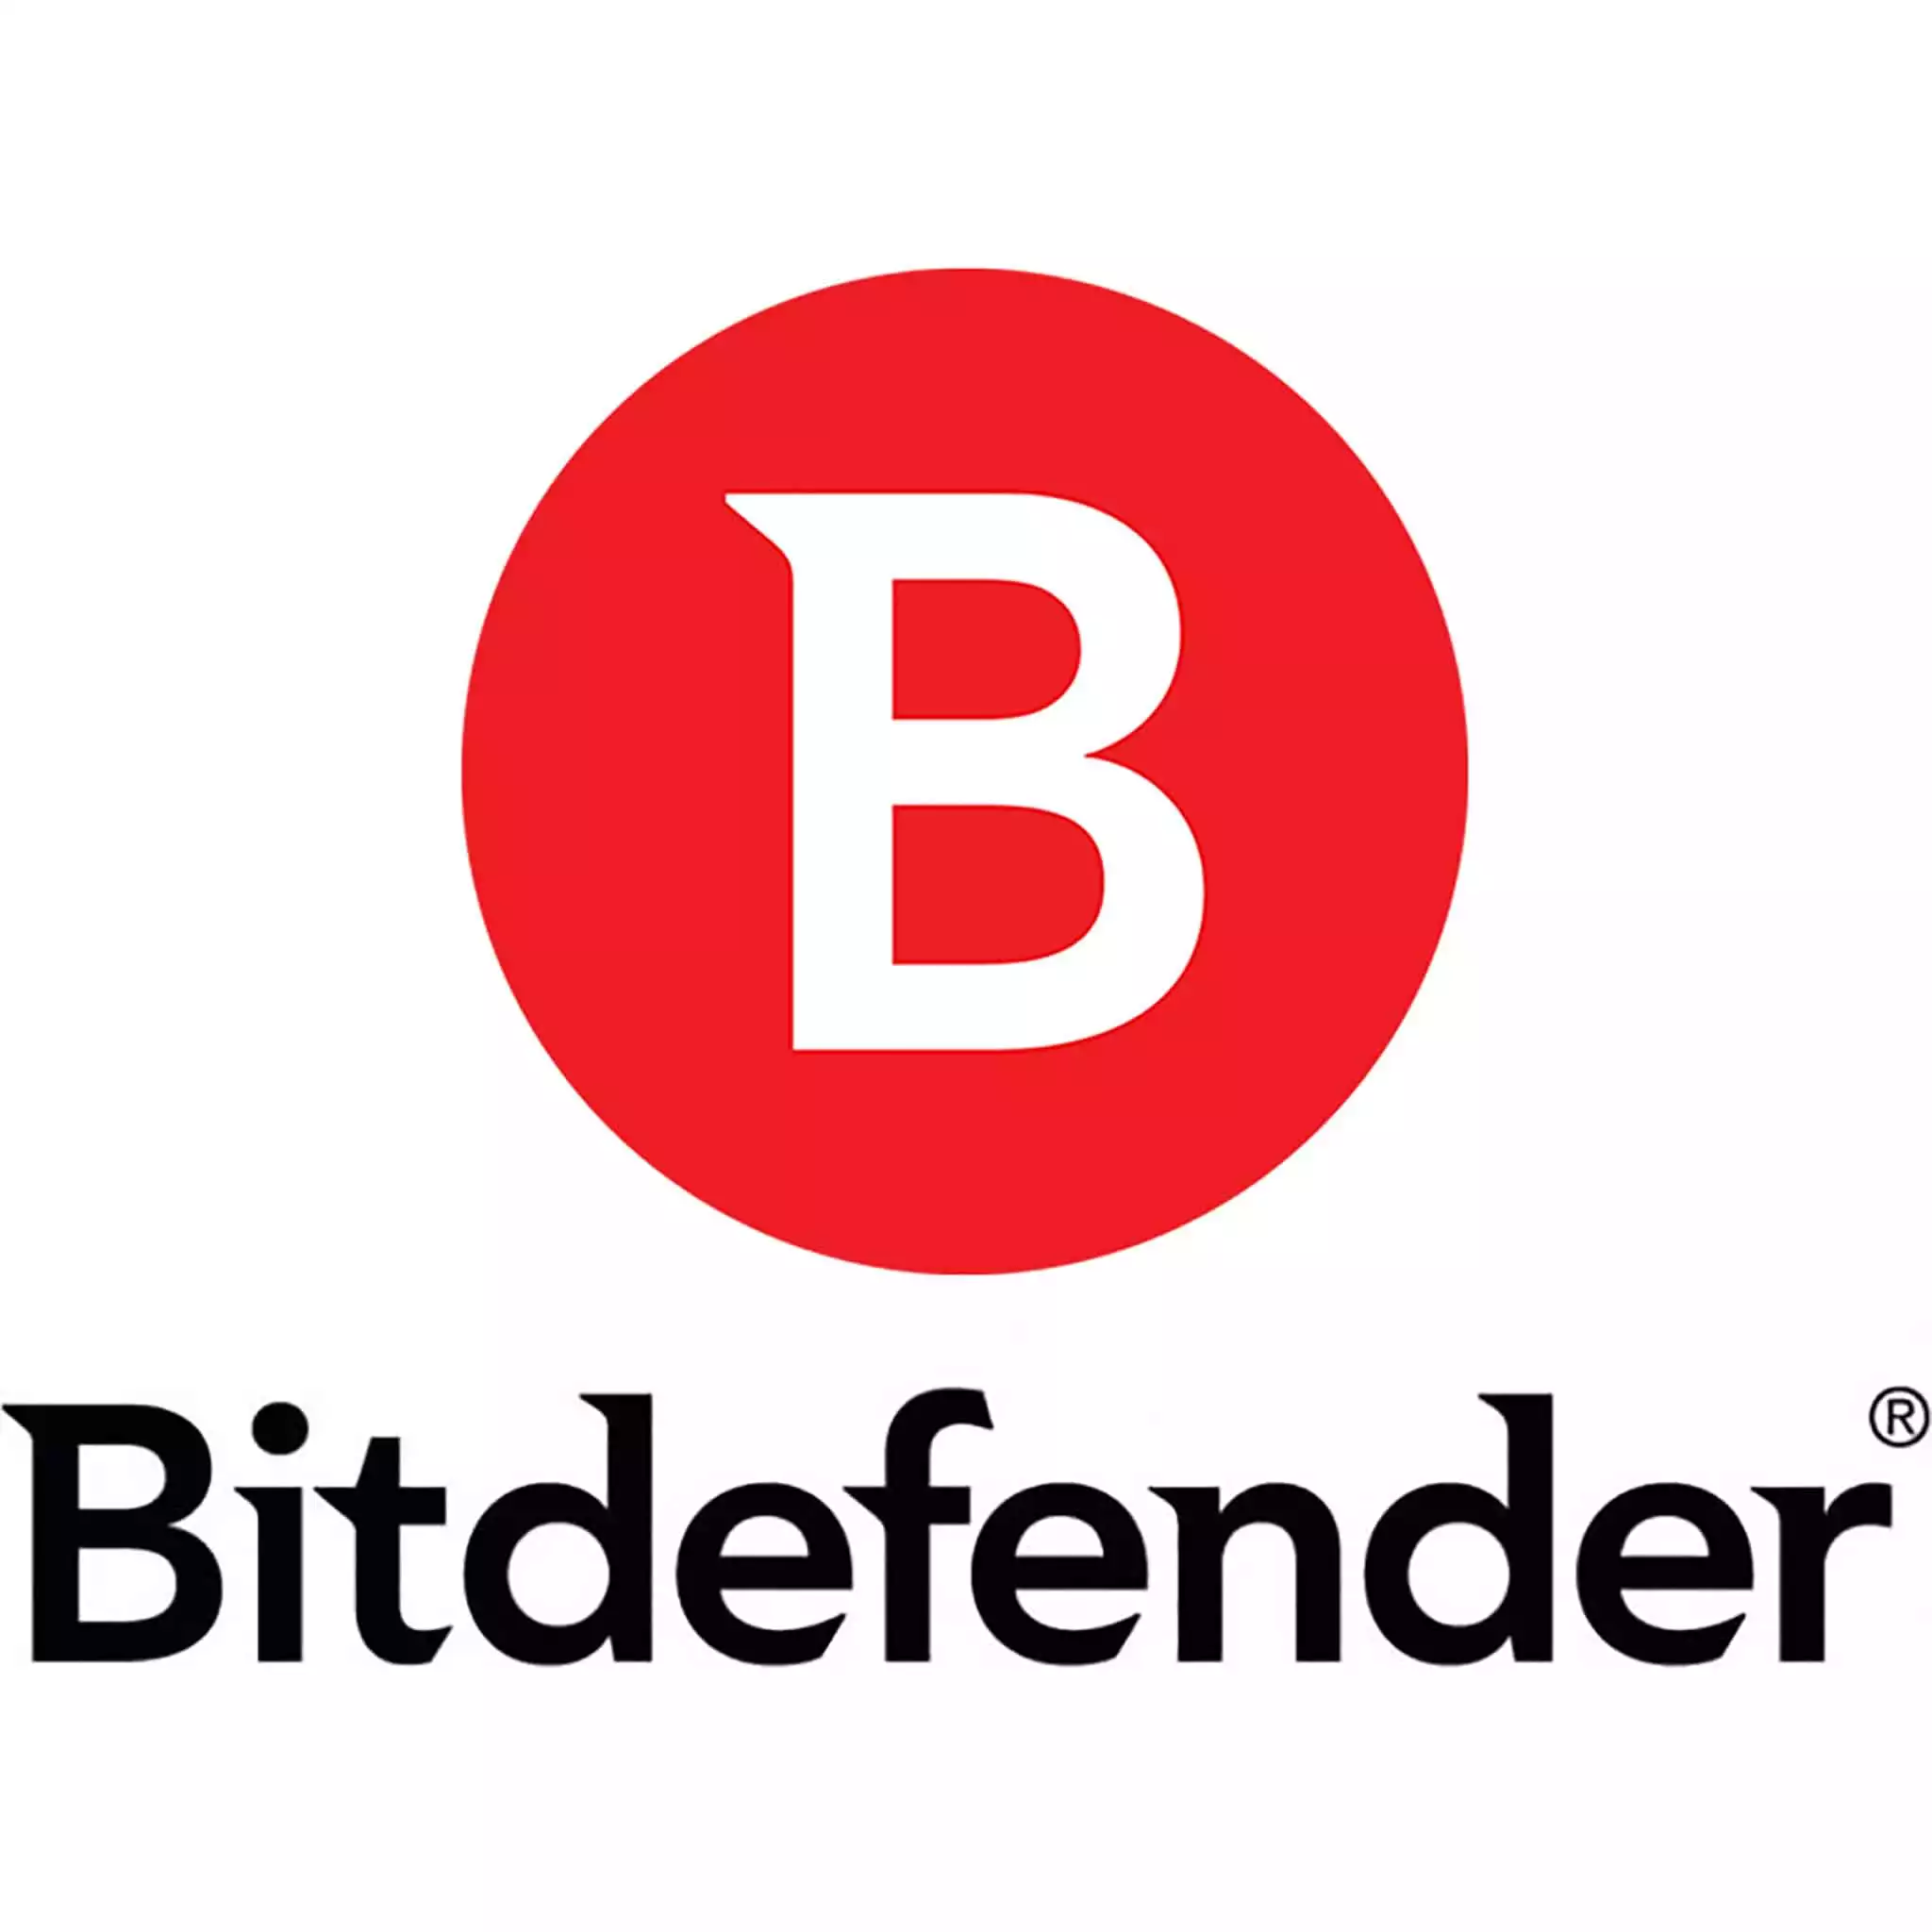 برنامج Bitdefender للأمن السيبراني